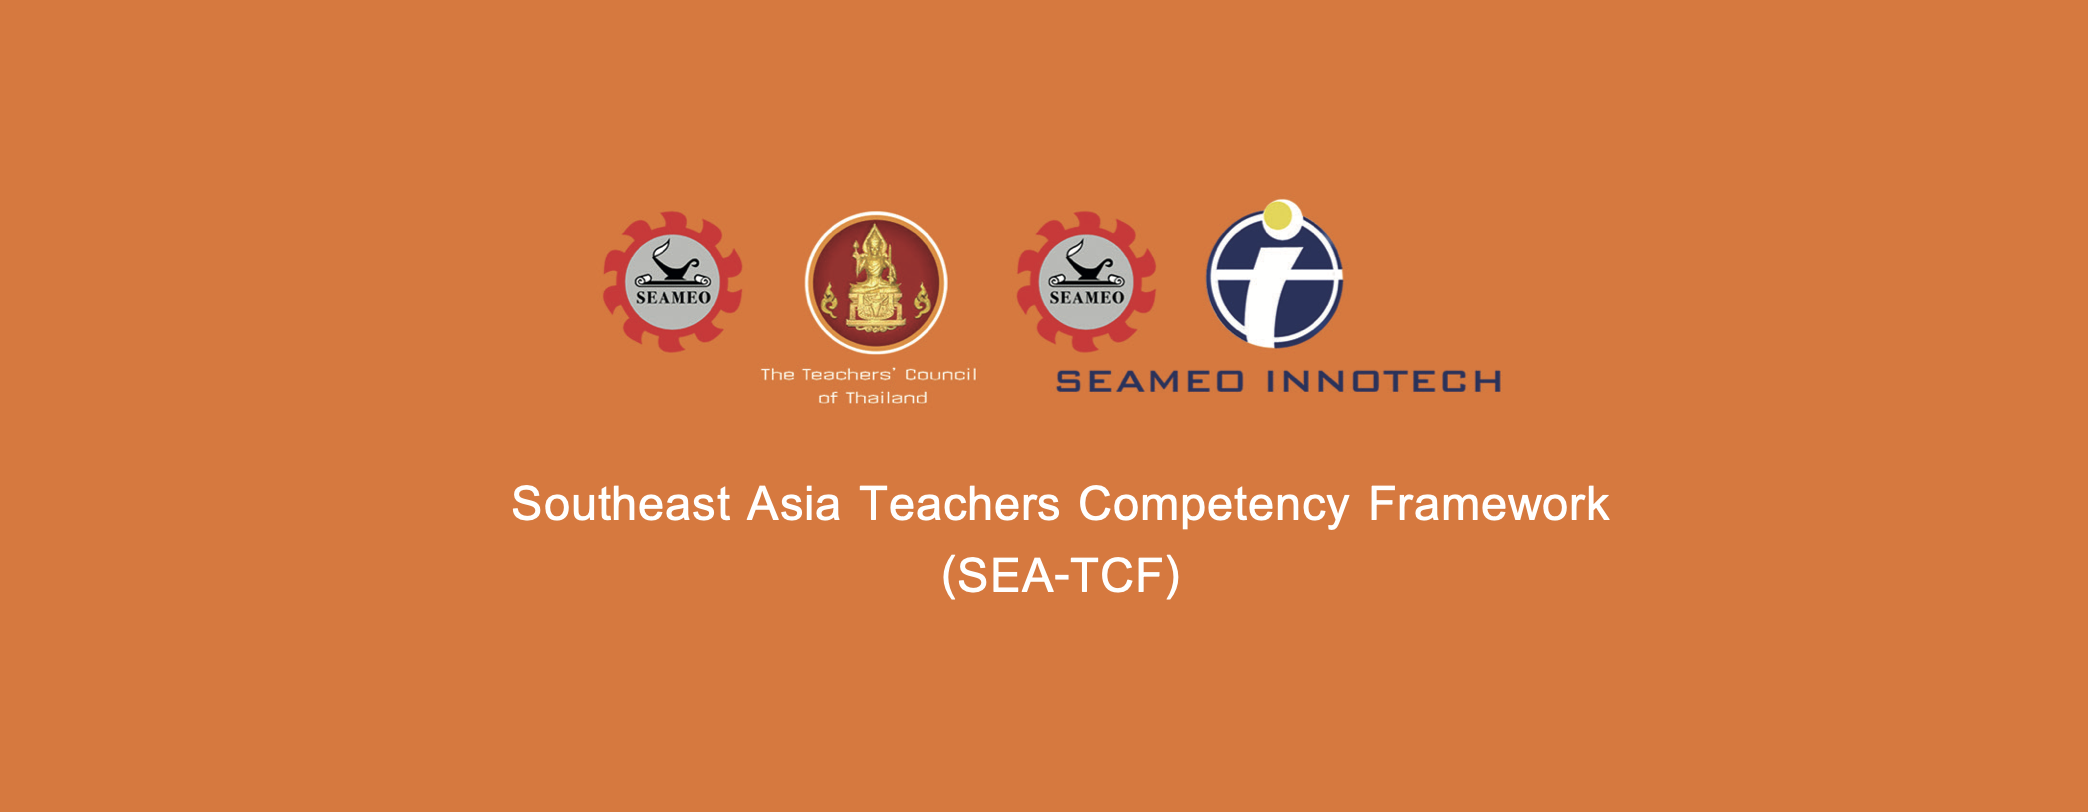 Un marco docente para el Sudeste Asiático